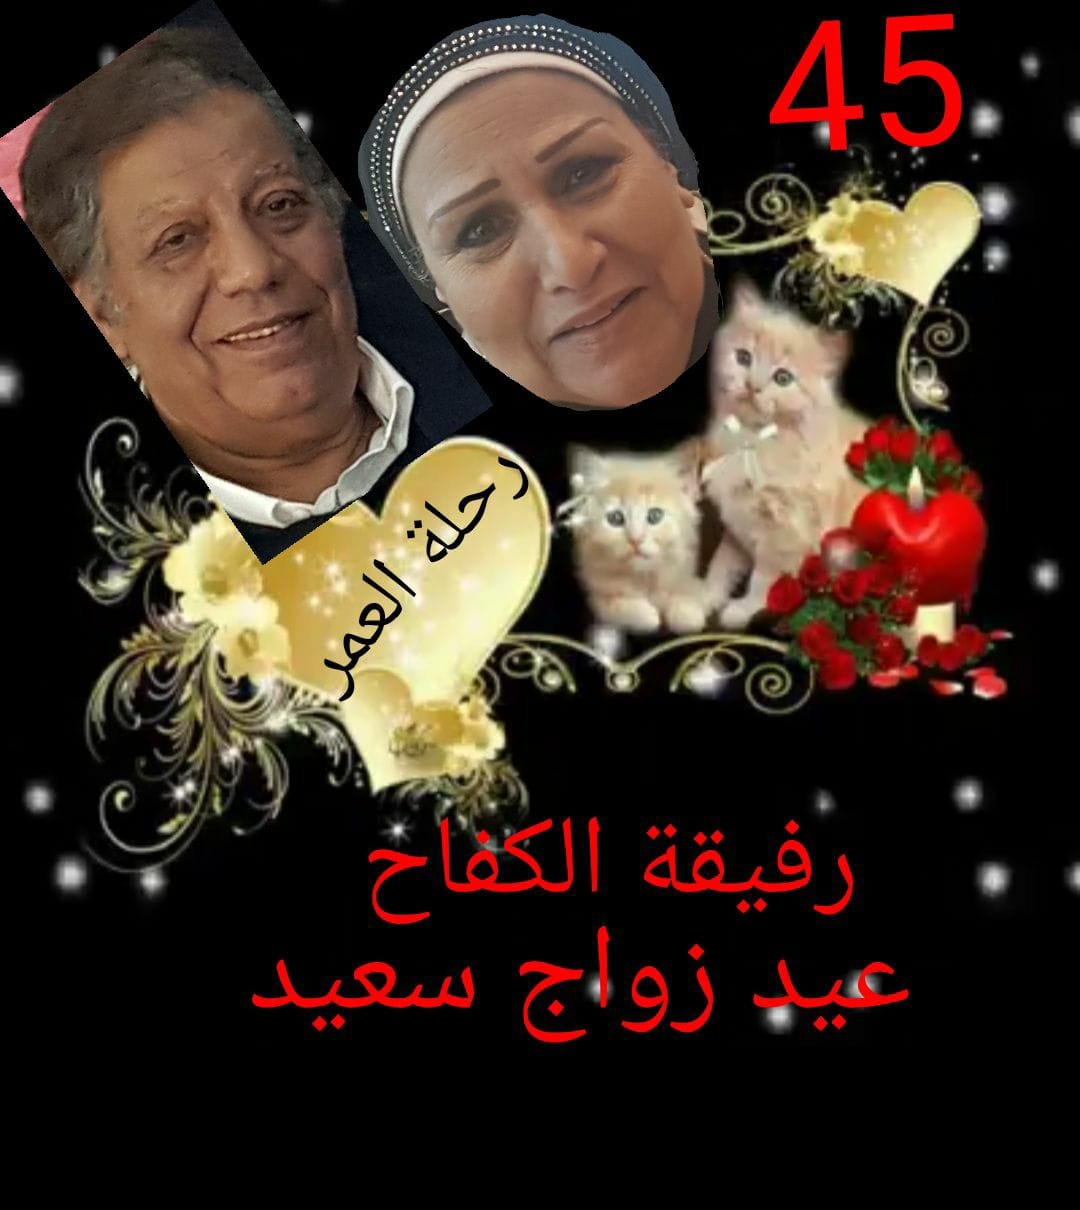 فتحية طنطاوى وزوجها اثناء الاحتفال بتلك الصورة بمناسبة مرور 45 عام على زواجهما فى 2017